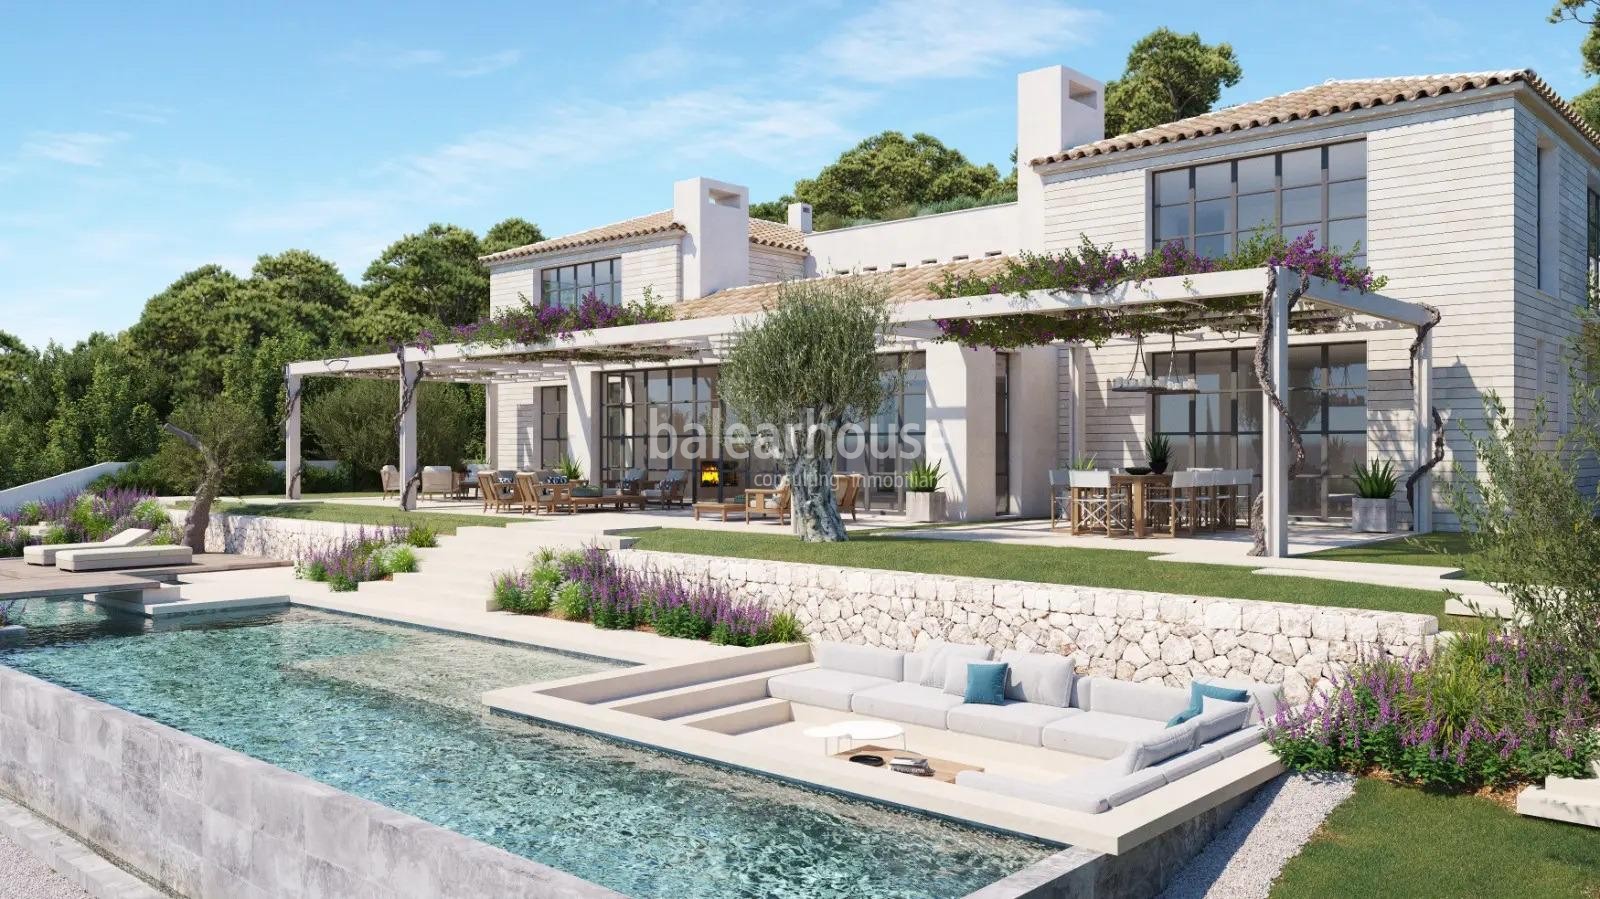 Große, neu gebaute Villa mit elegantem, modernem Design und herrlichem Meerblick.